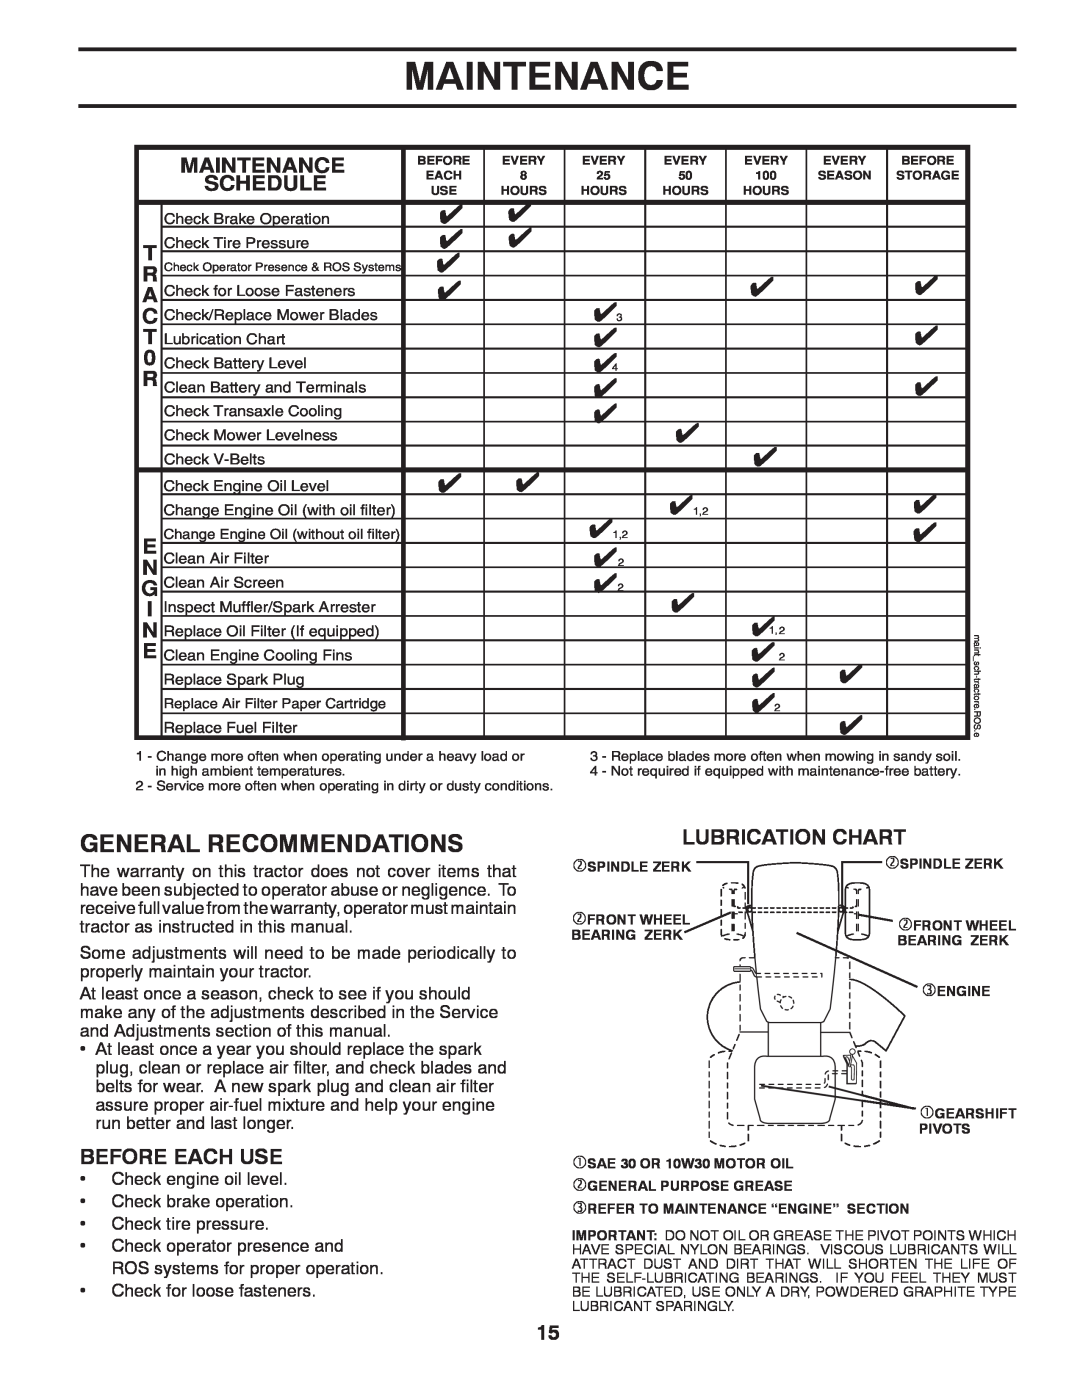 Poulan 96042003505 manual Maintenance, Lubrication Chart 